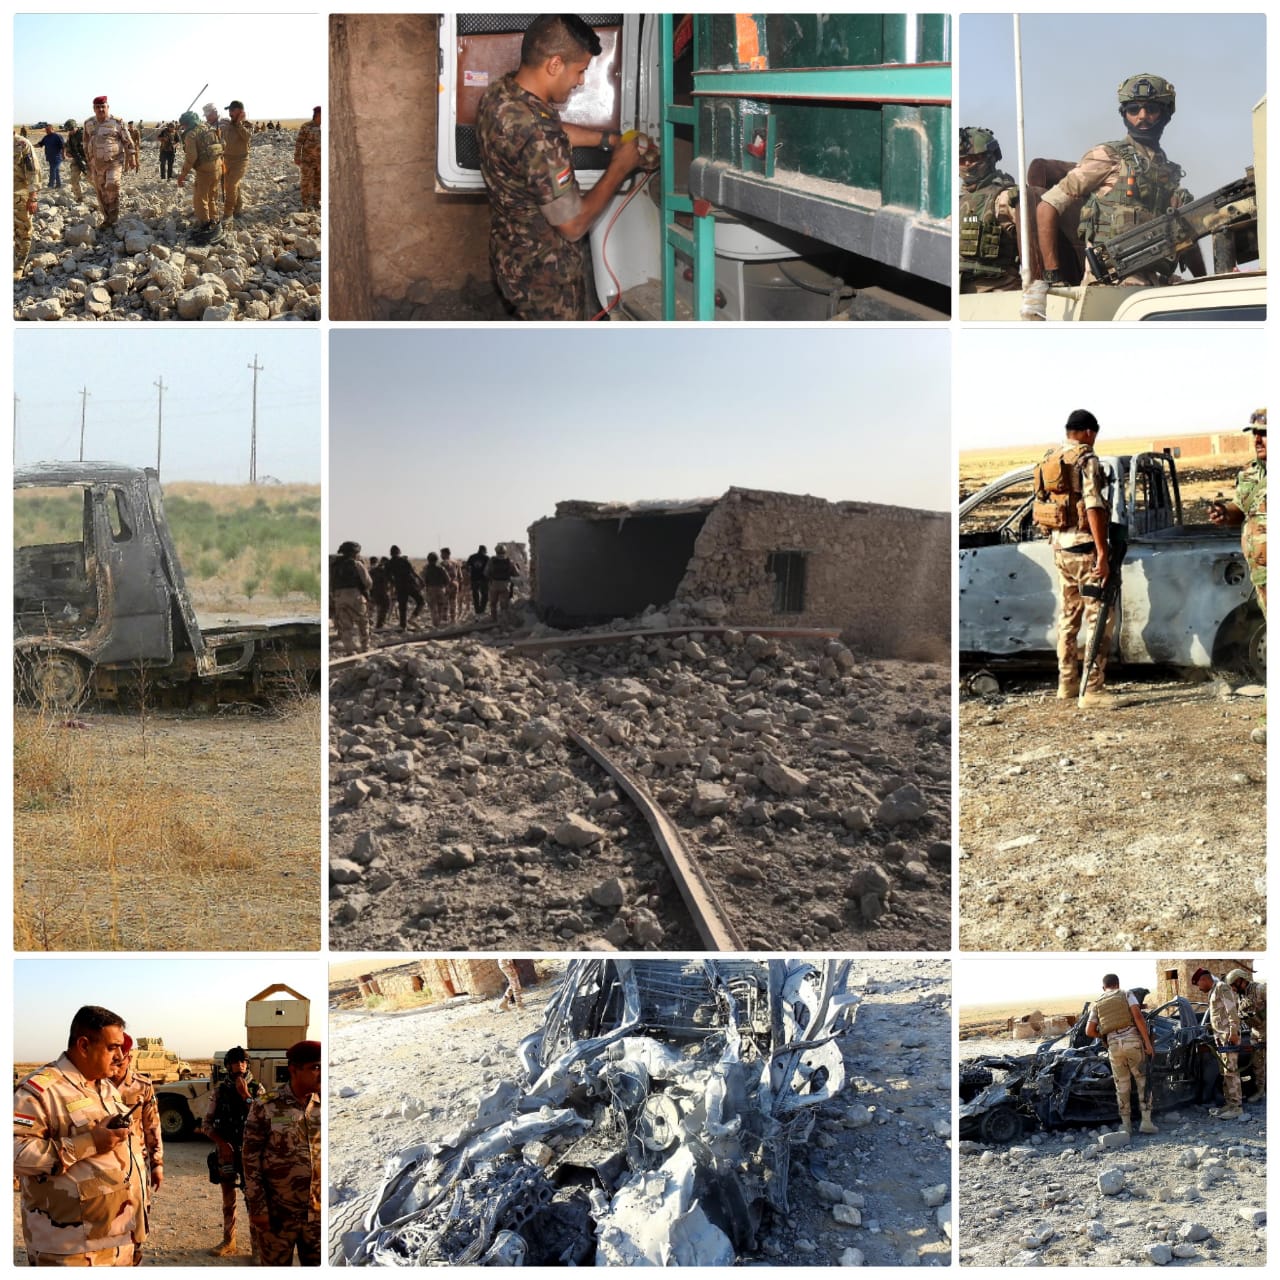 التحالف الدولي يقتل 8 عناصر من داعش بضربة جوية استهدفتهم بمسقط رأس صدام